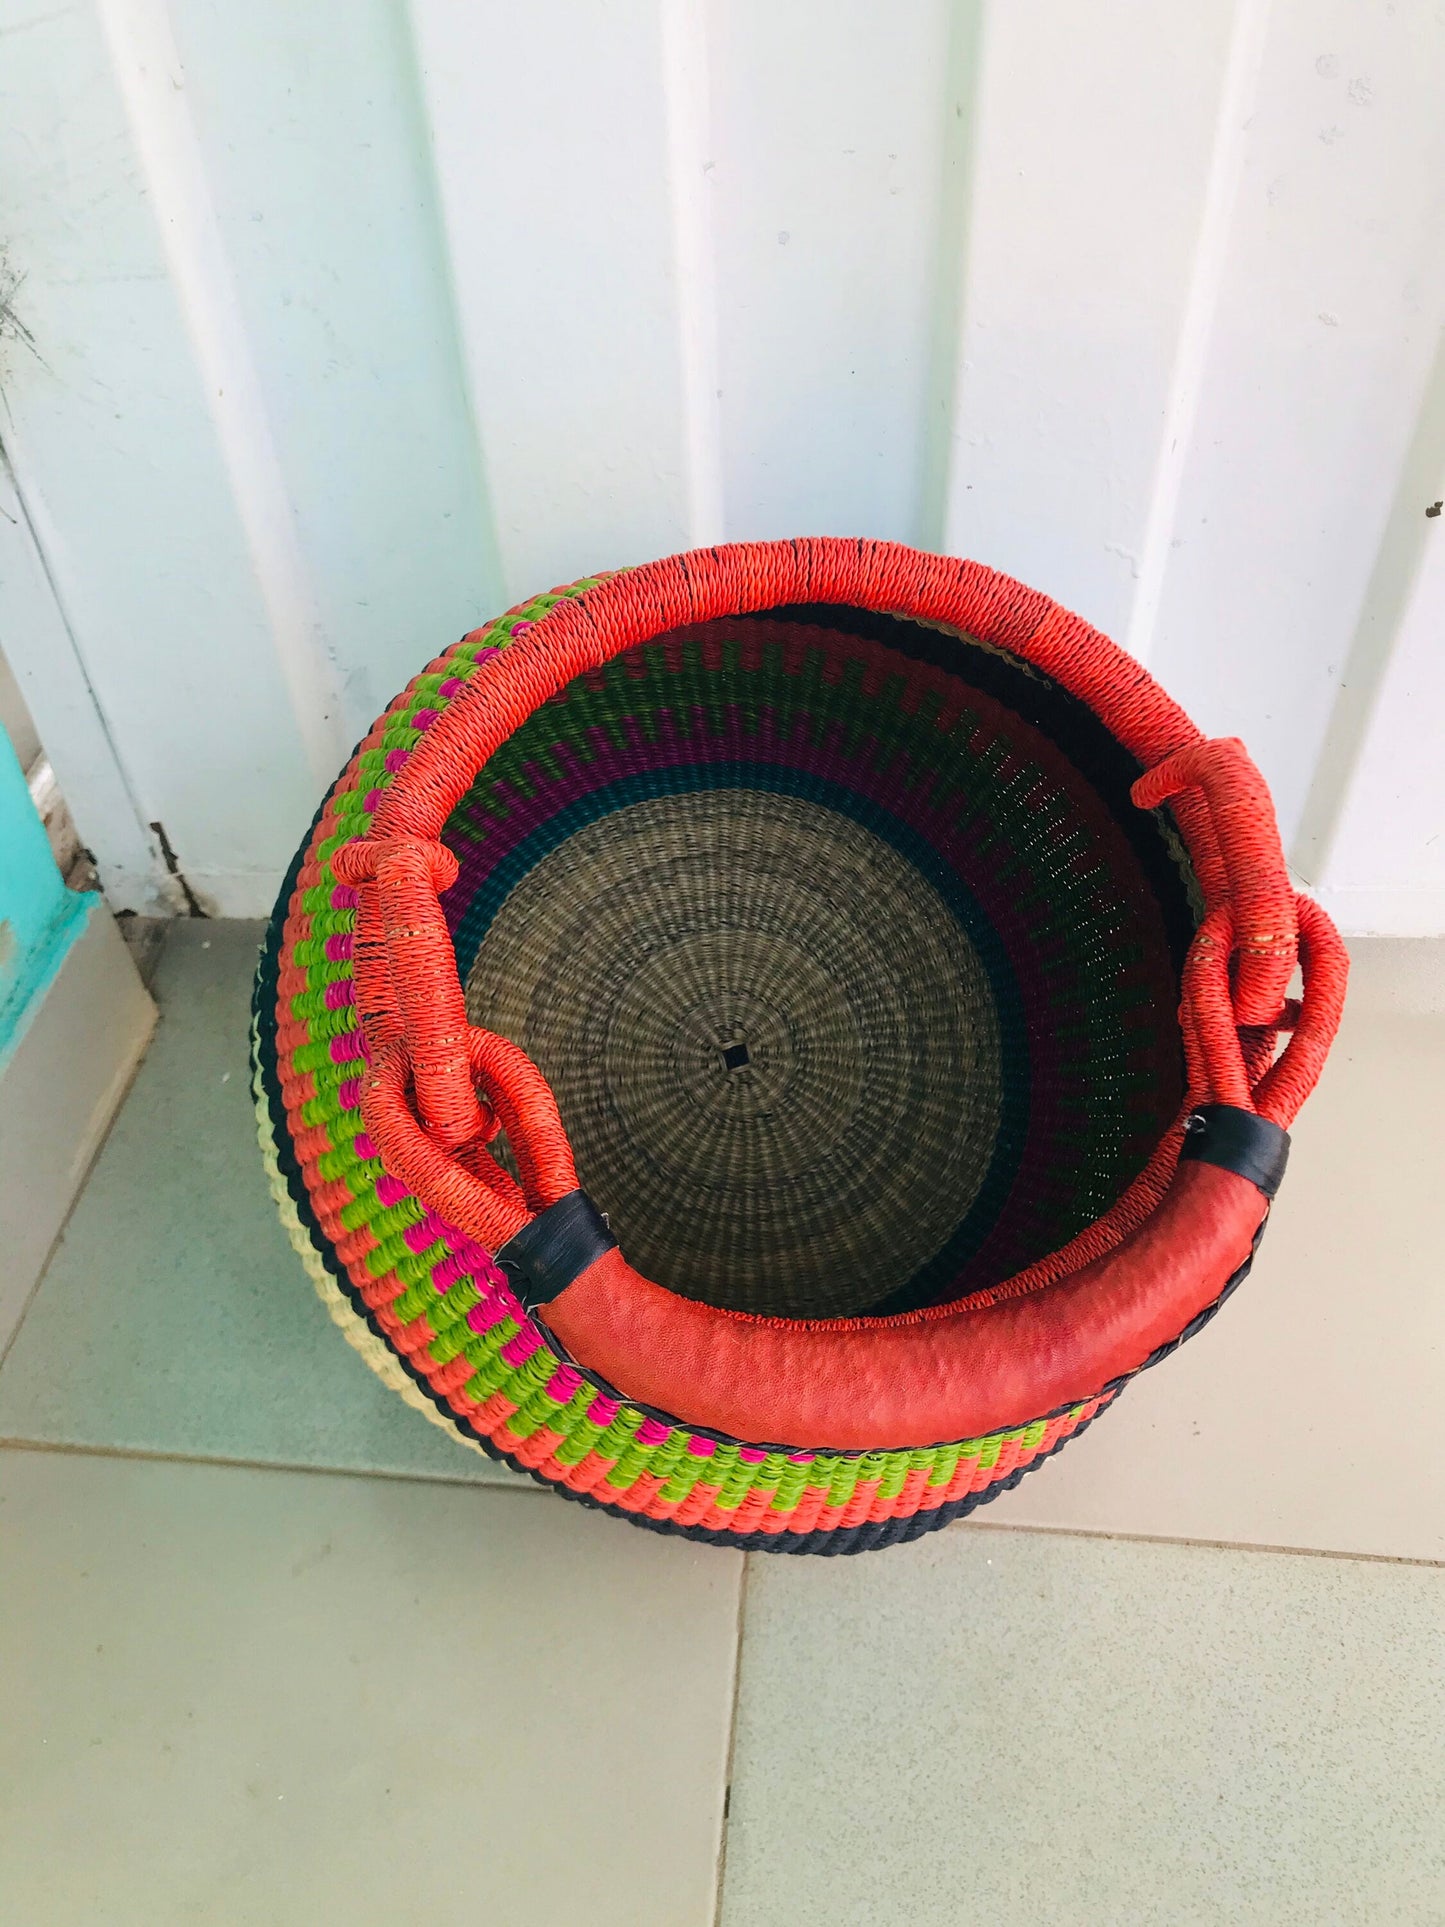 Bolga Basket, African Basket, Handmade Basket, Ghana Basket, Pot Basket, Gift for her, Personalized gift 004